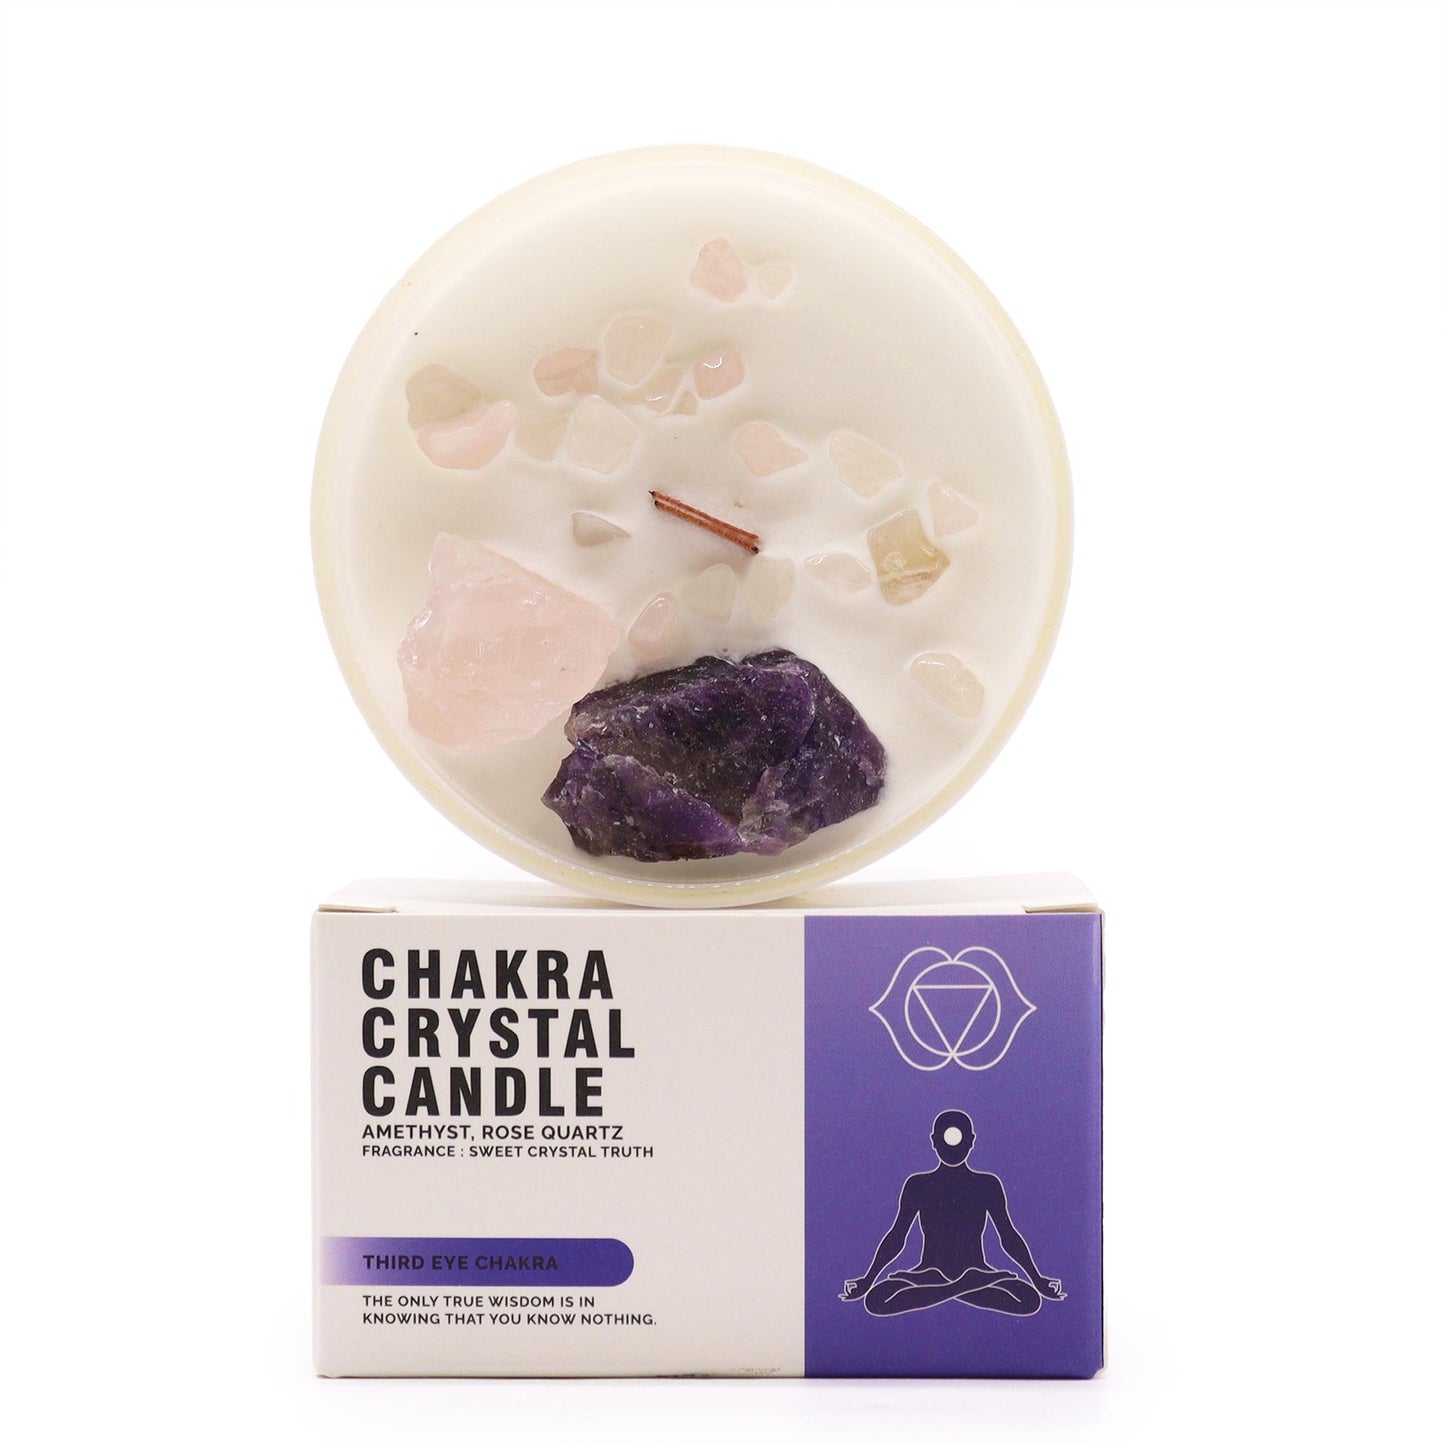 Chakra Crystal Candle - Third Eye Chakra